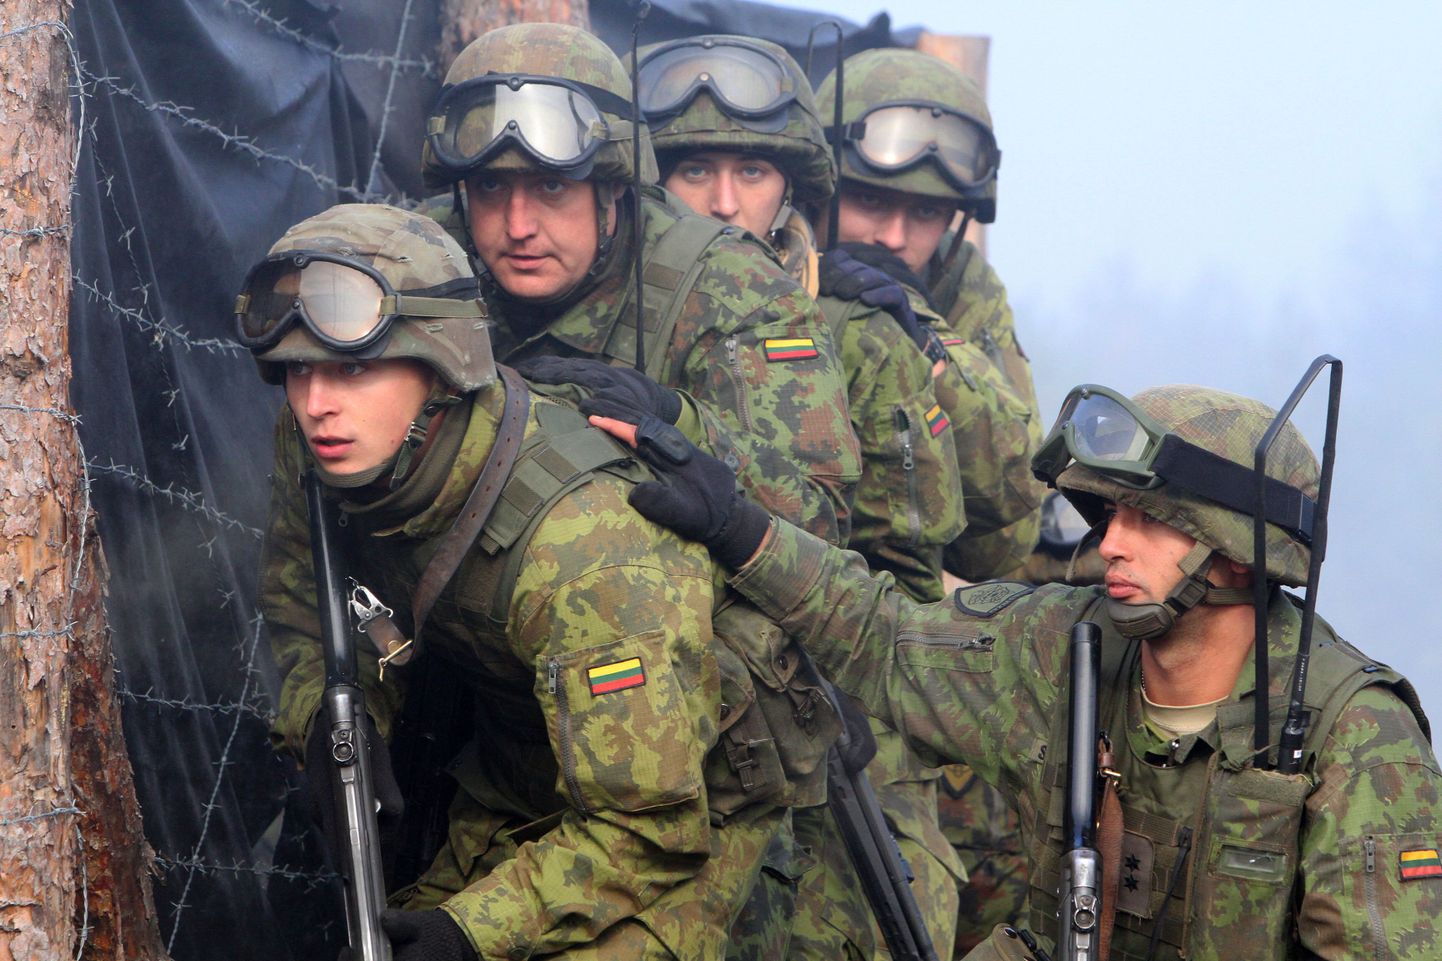 Leedu sõdurid 2012. aastal rahvusvahelisel õppusel, kus osalesid ka Poola ja Ukraina.